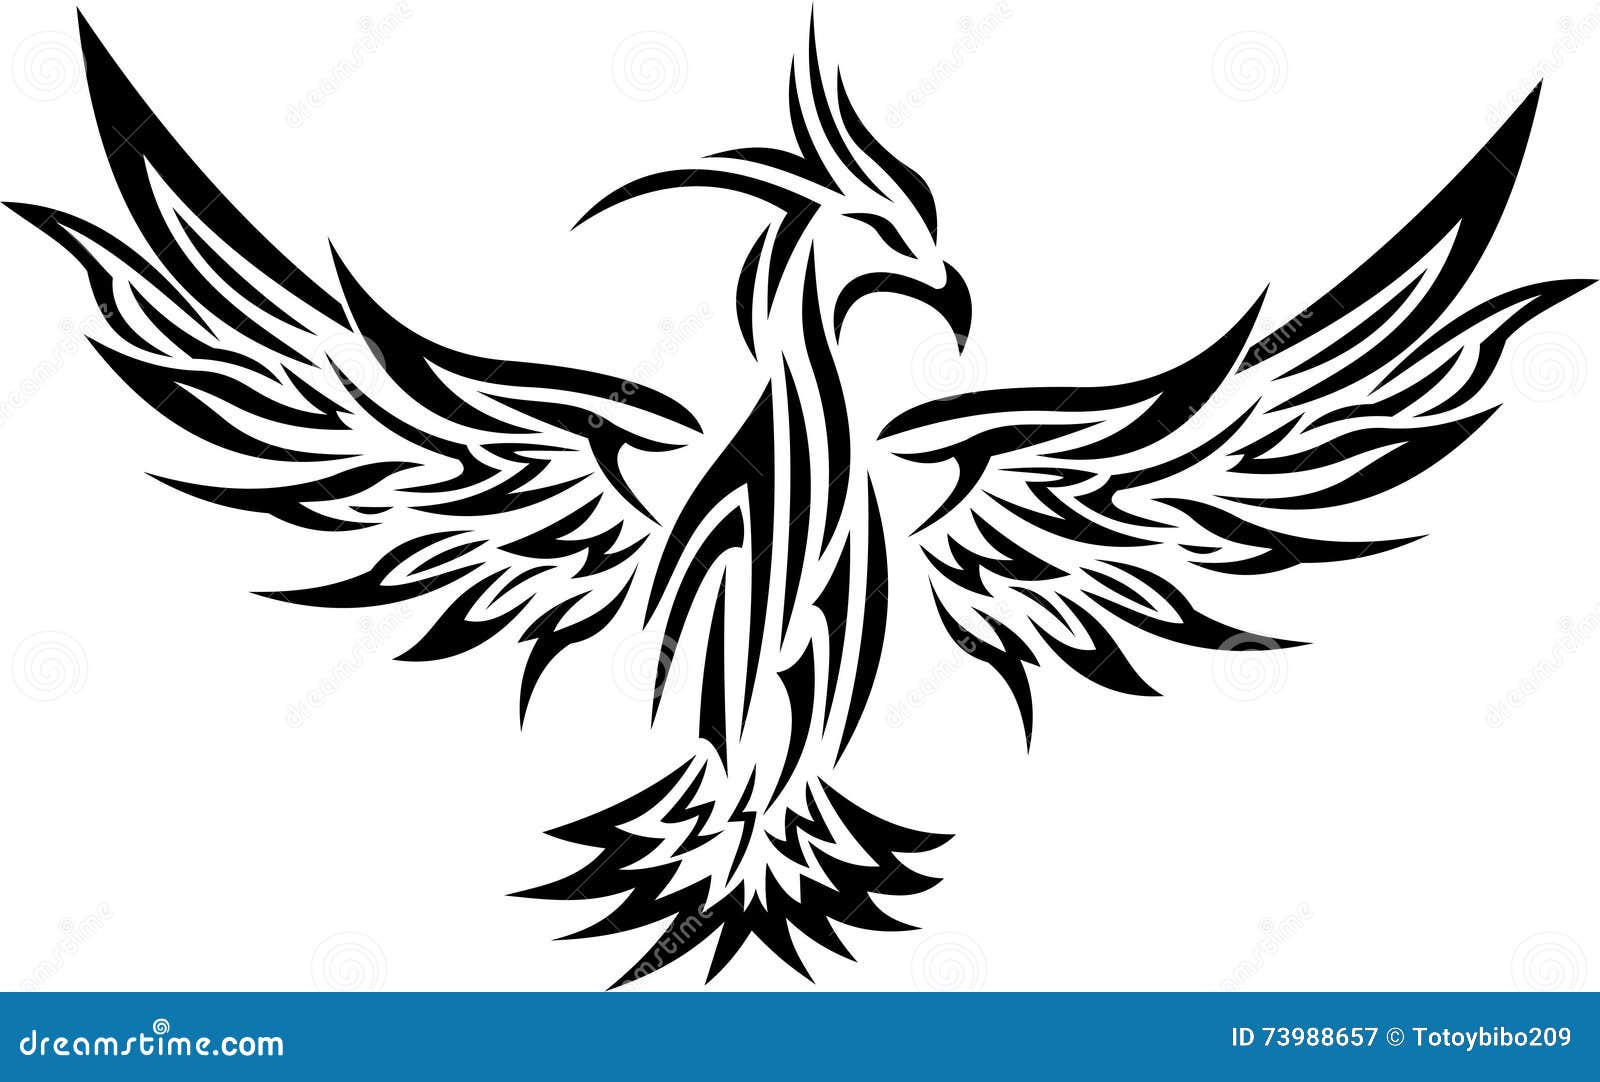 Tribal Phoenix Tattoo Stock Illustrations – 1,417 Tribal Phoenix Tattoo  Stock Illustrations, Vectors & Clipart - Dreamstime